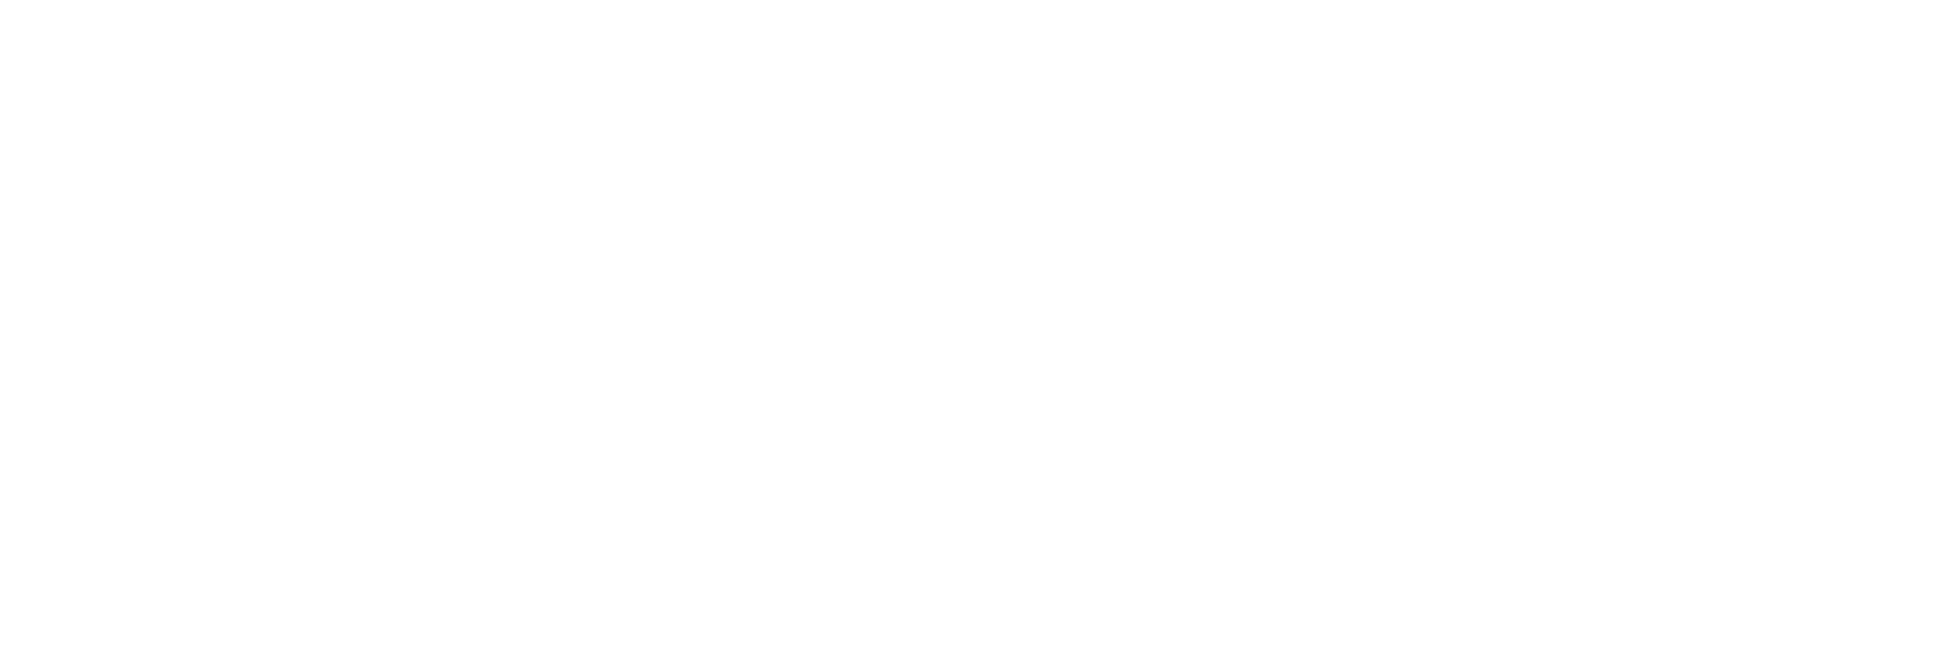 AniCura Dyreklinikken Kvaløya logo